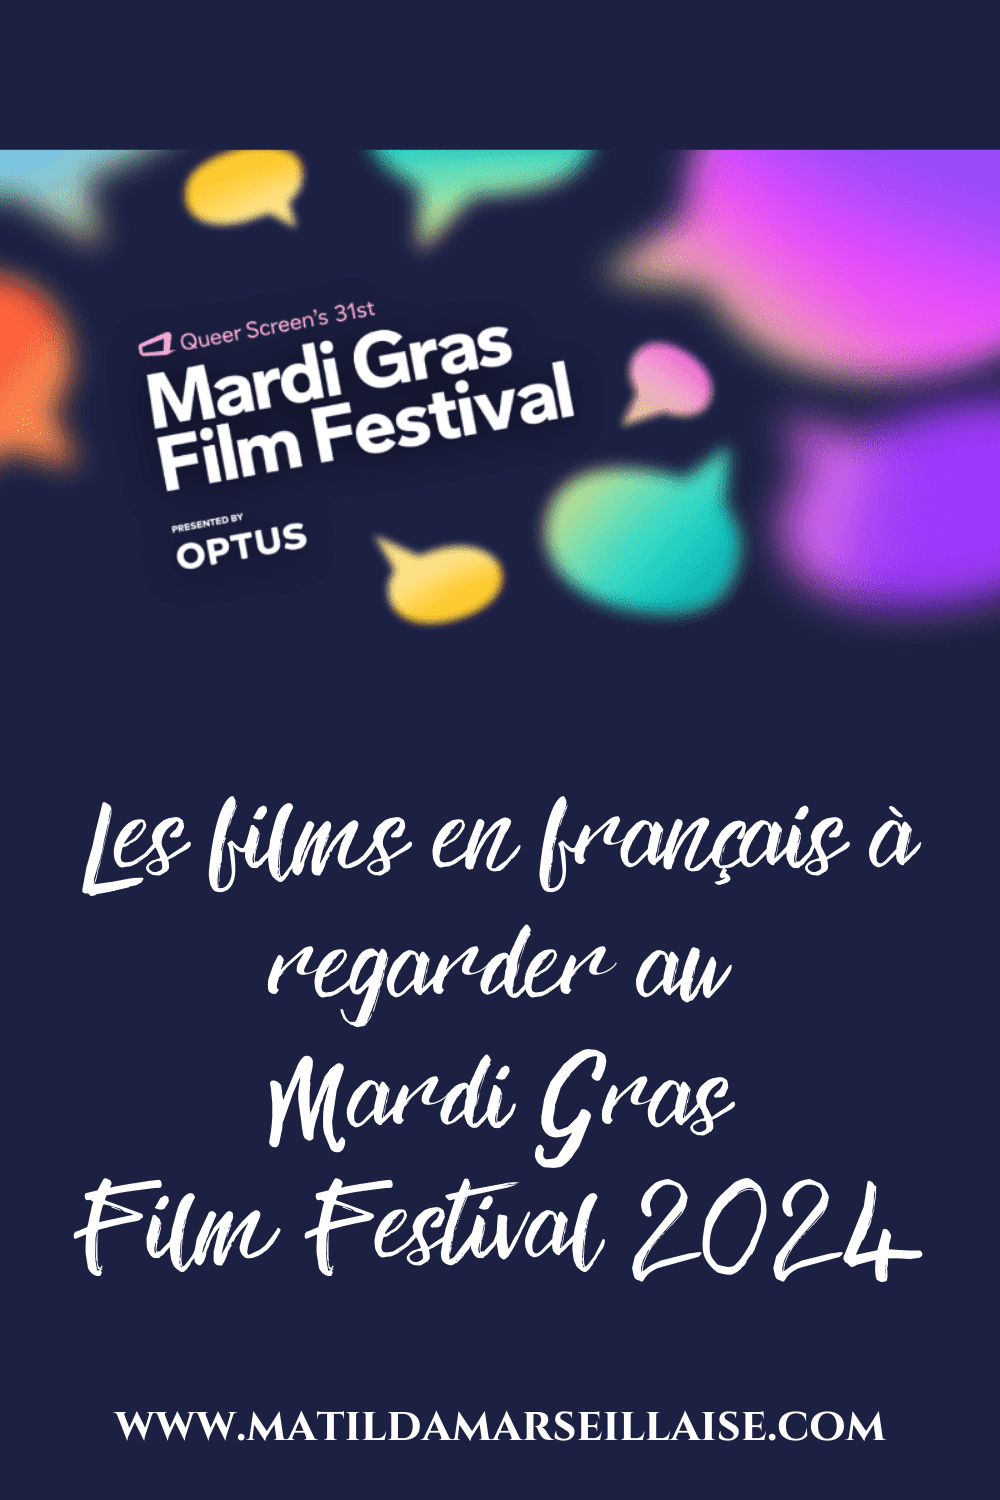 Le Mardi Gras Film Festival 2024 présente une variété de films en langue française dans les salles de Sydney